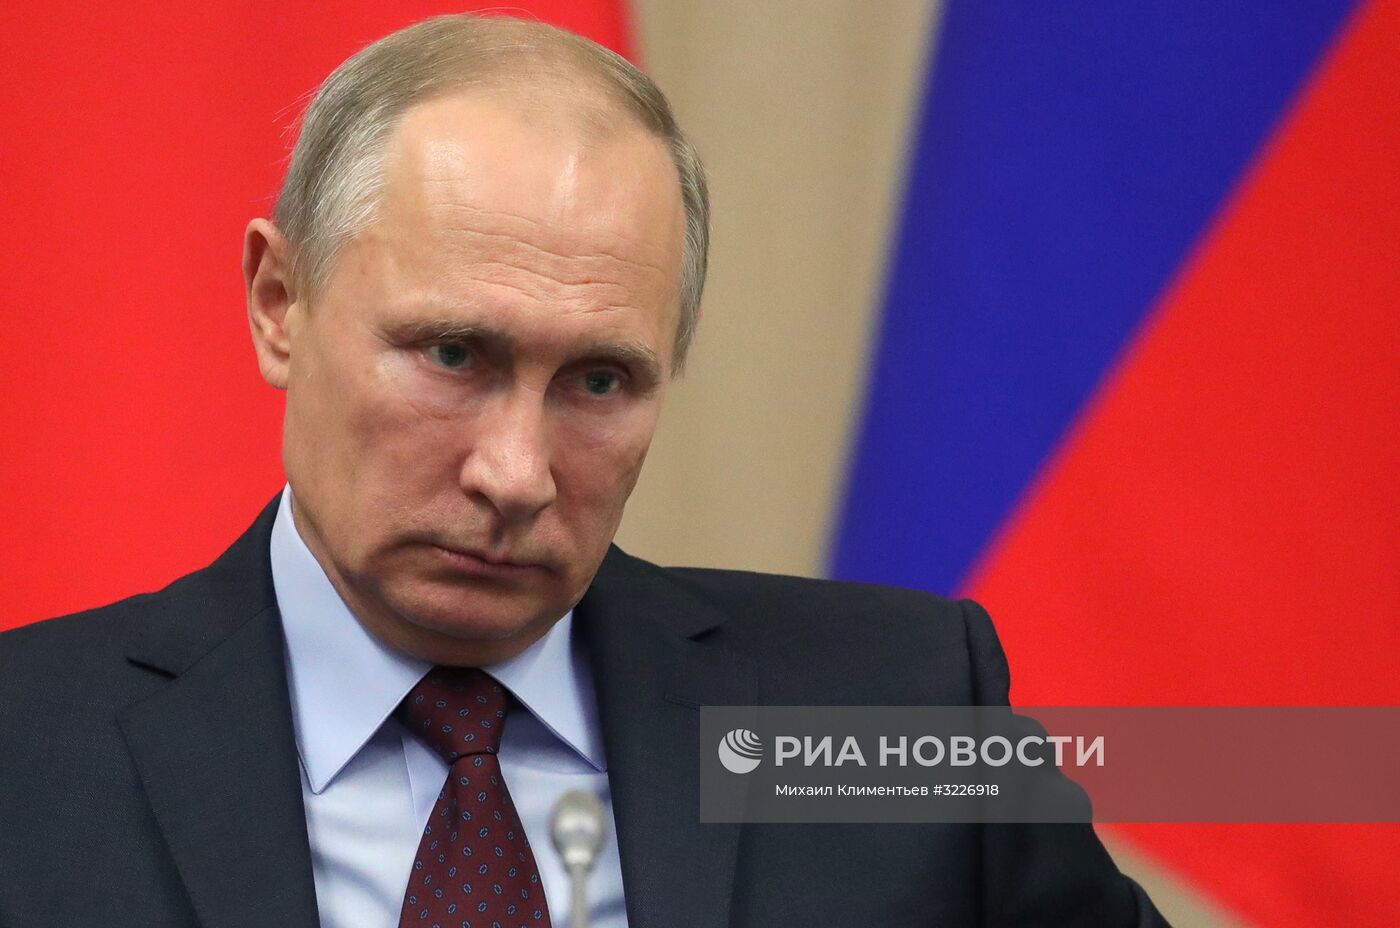 Рабочая встреча президента РФ В. Путина с ушедшими в отставку руководителями регионов